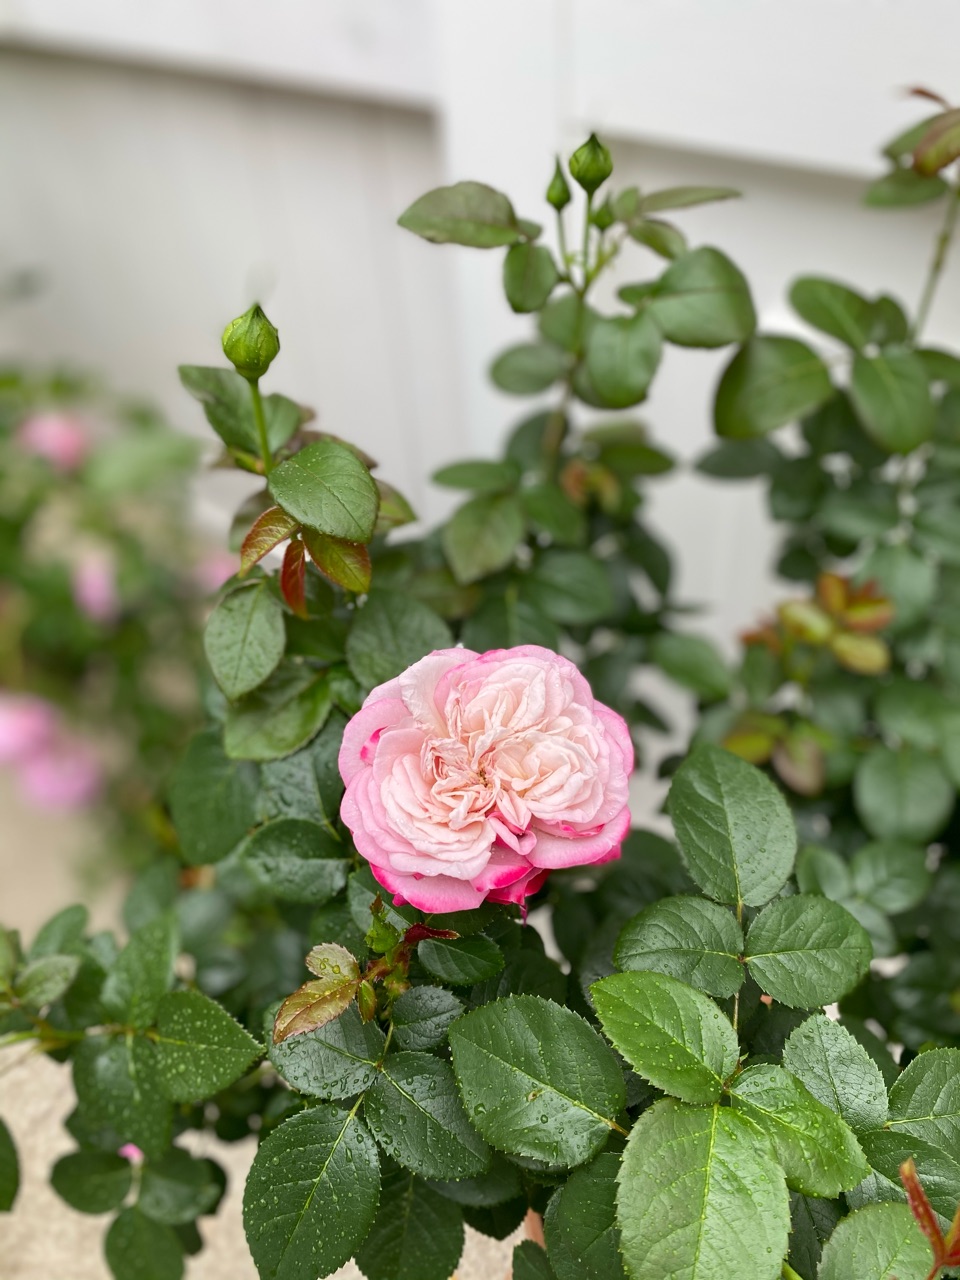 引き出し風の鉢を作ってみた パリスが咲いた のばらのガーデニングブログ Hana And Rose Garden Powered By ライブドアブログ